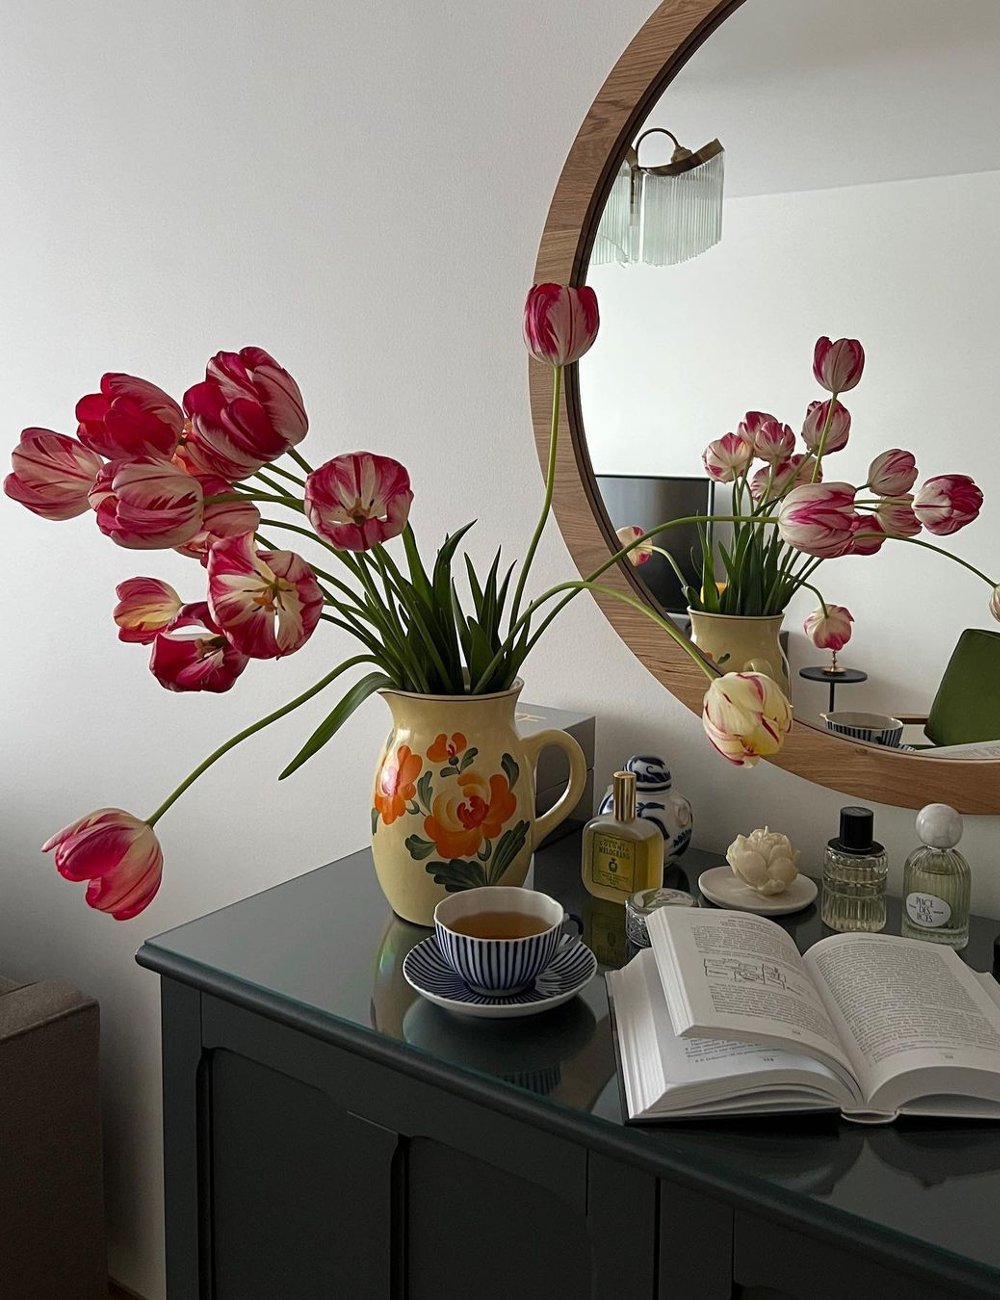 Flor - decor - decoração com flores - casa - inspiração - https://stealthelook.com.br